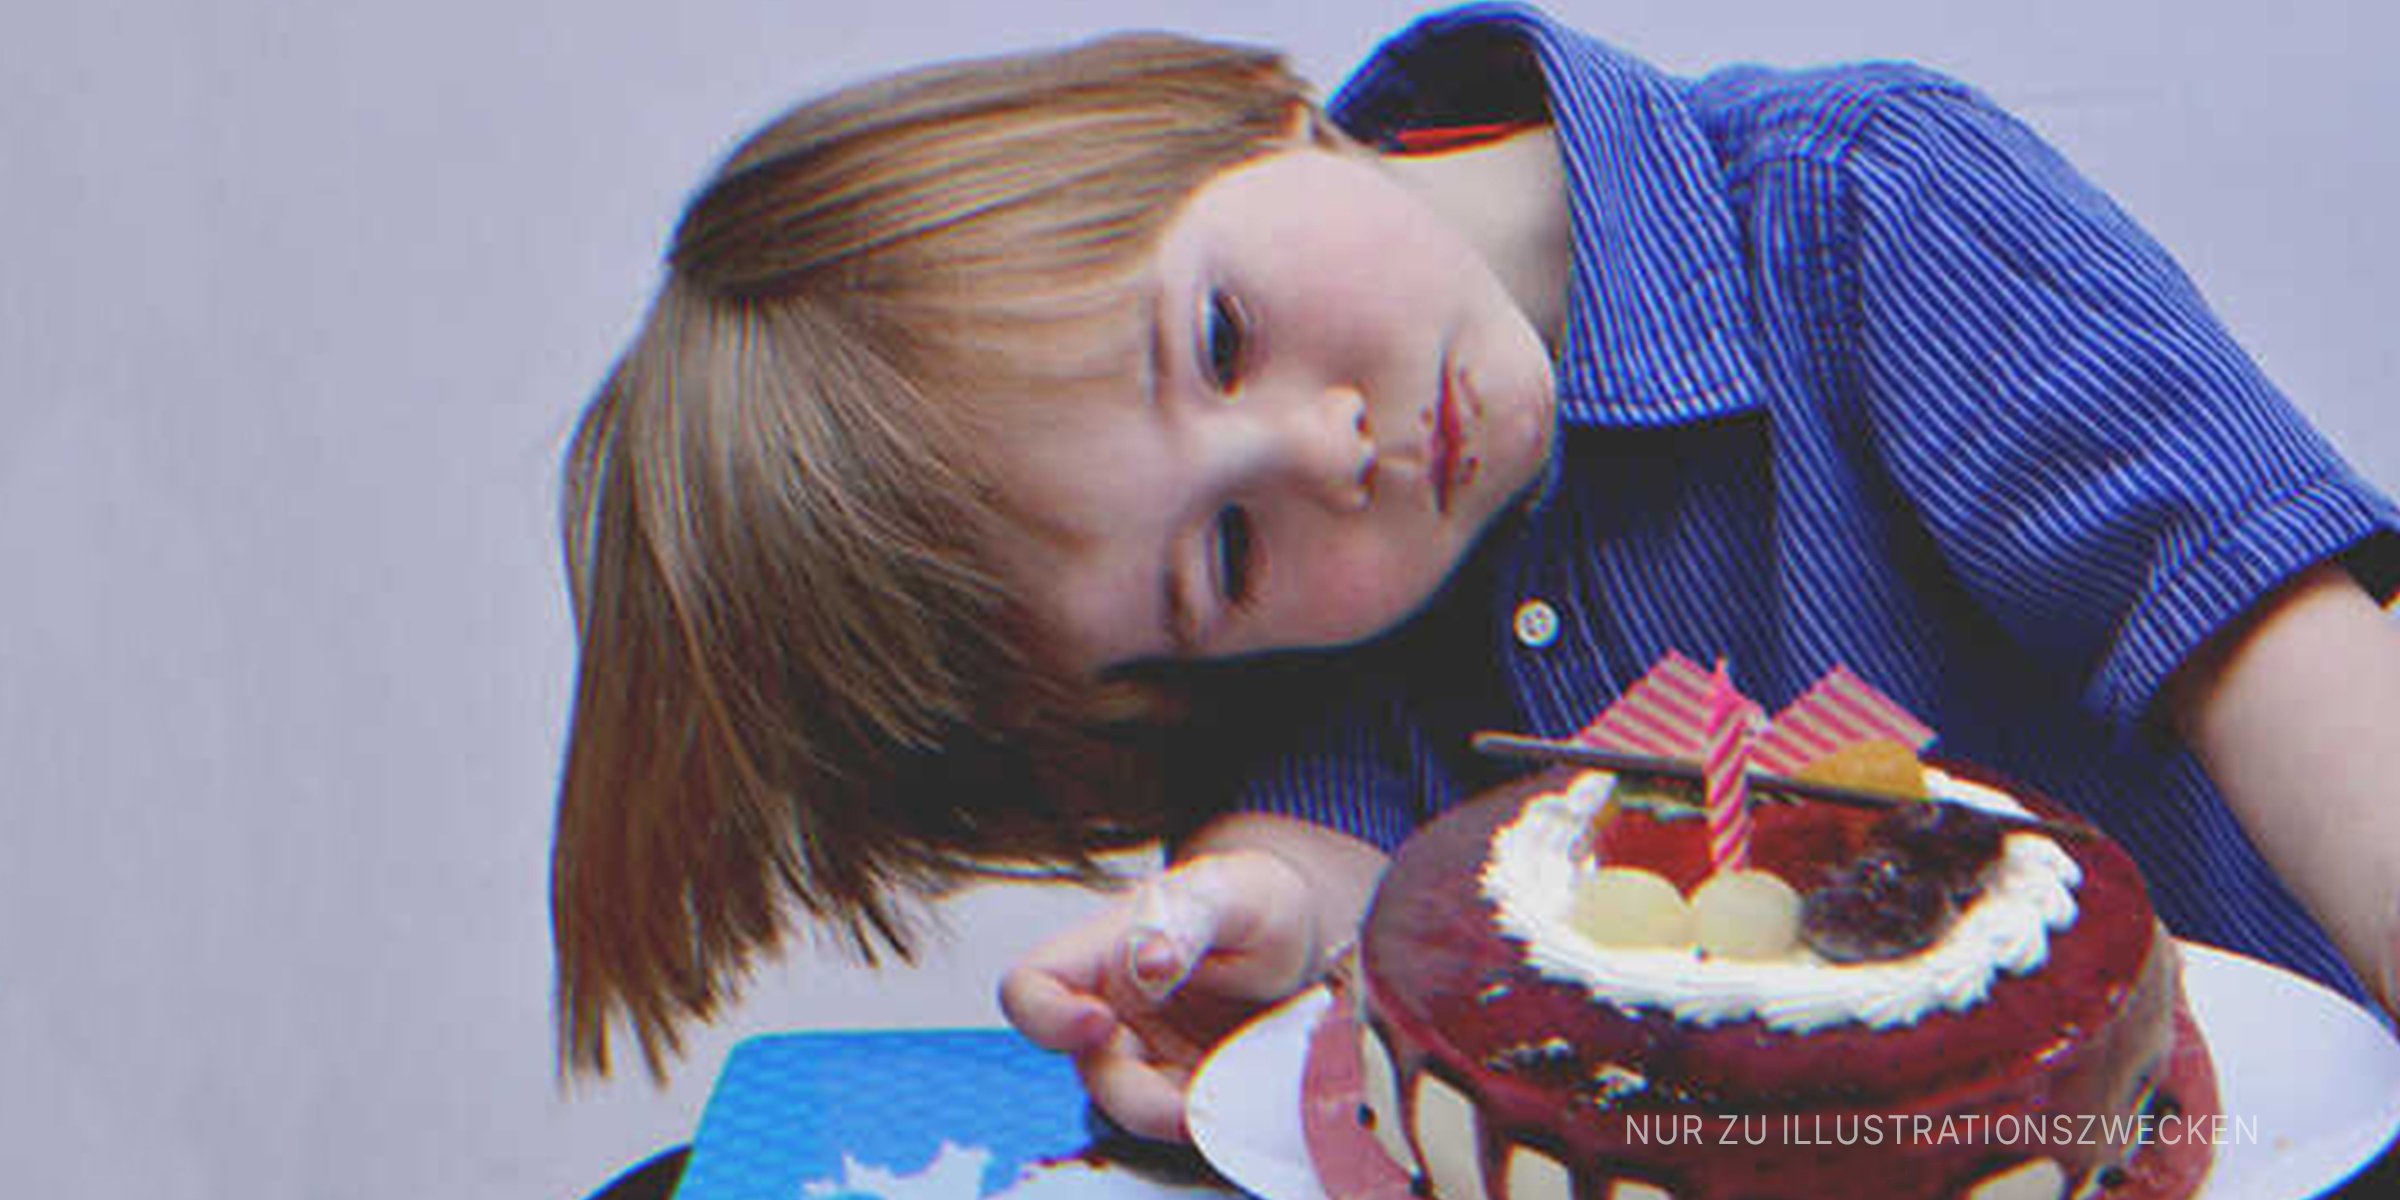 Kleiner Junge, der einen Kuchen betrachtet | Quelle: Flickr / Marufish Shutterstock